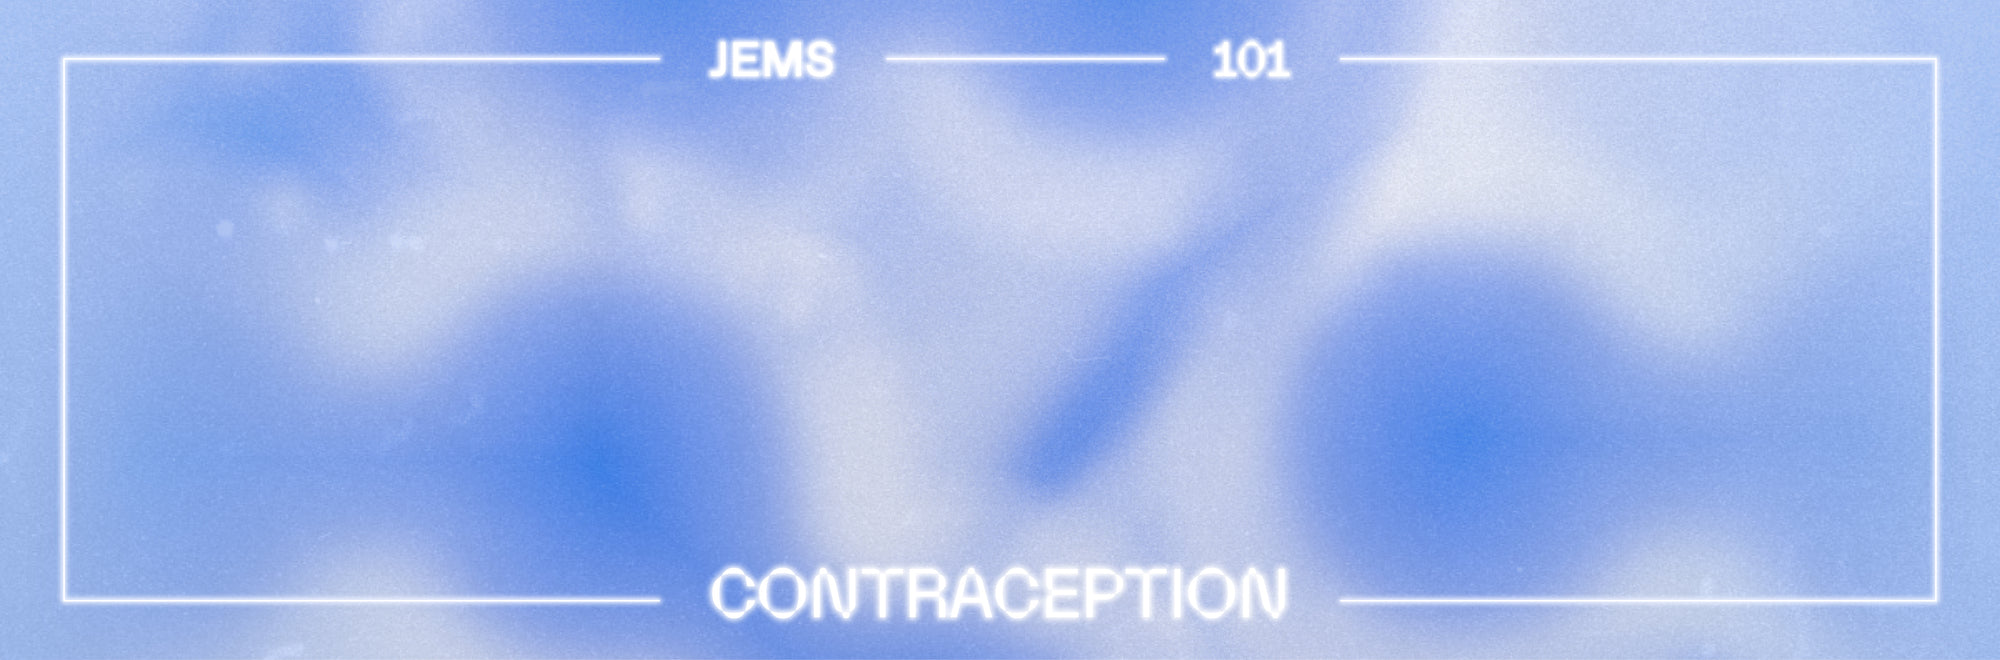 101: Contraception